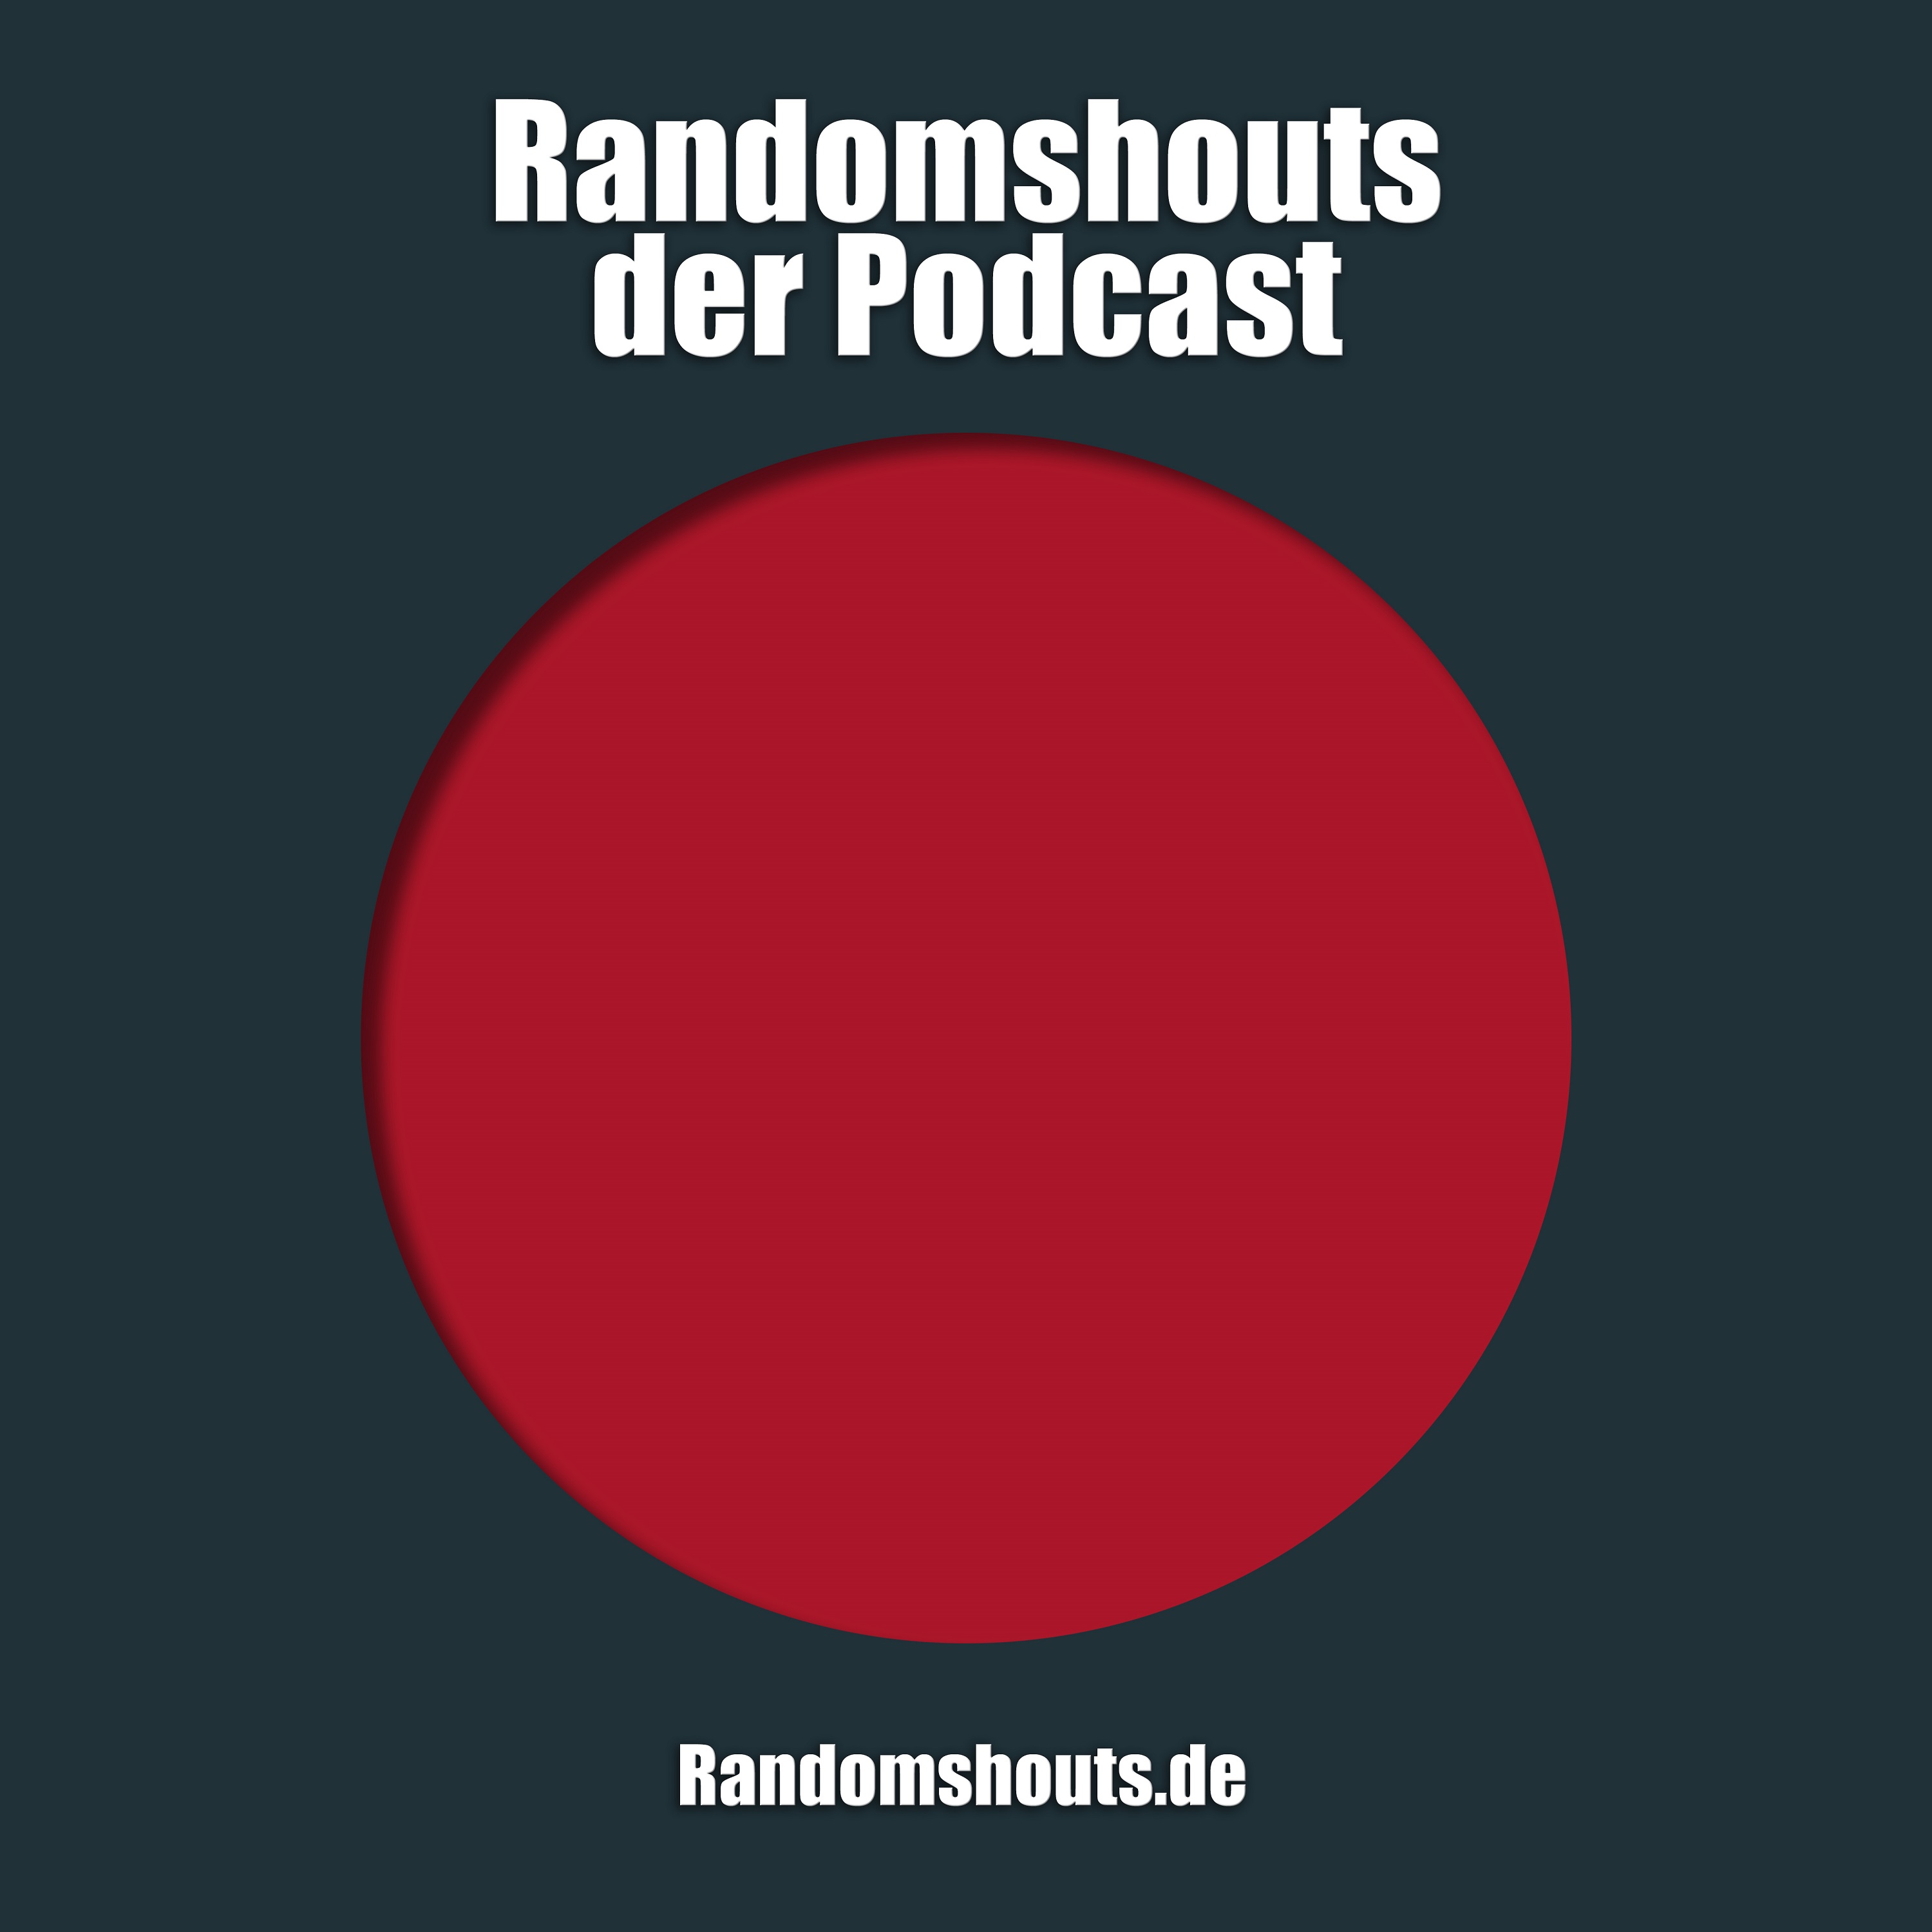 Randomshouts der Podcast - Episode 13: Für eine Tüte Cringe